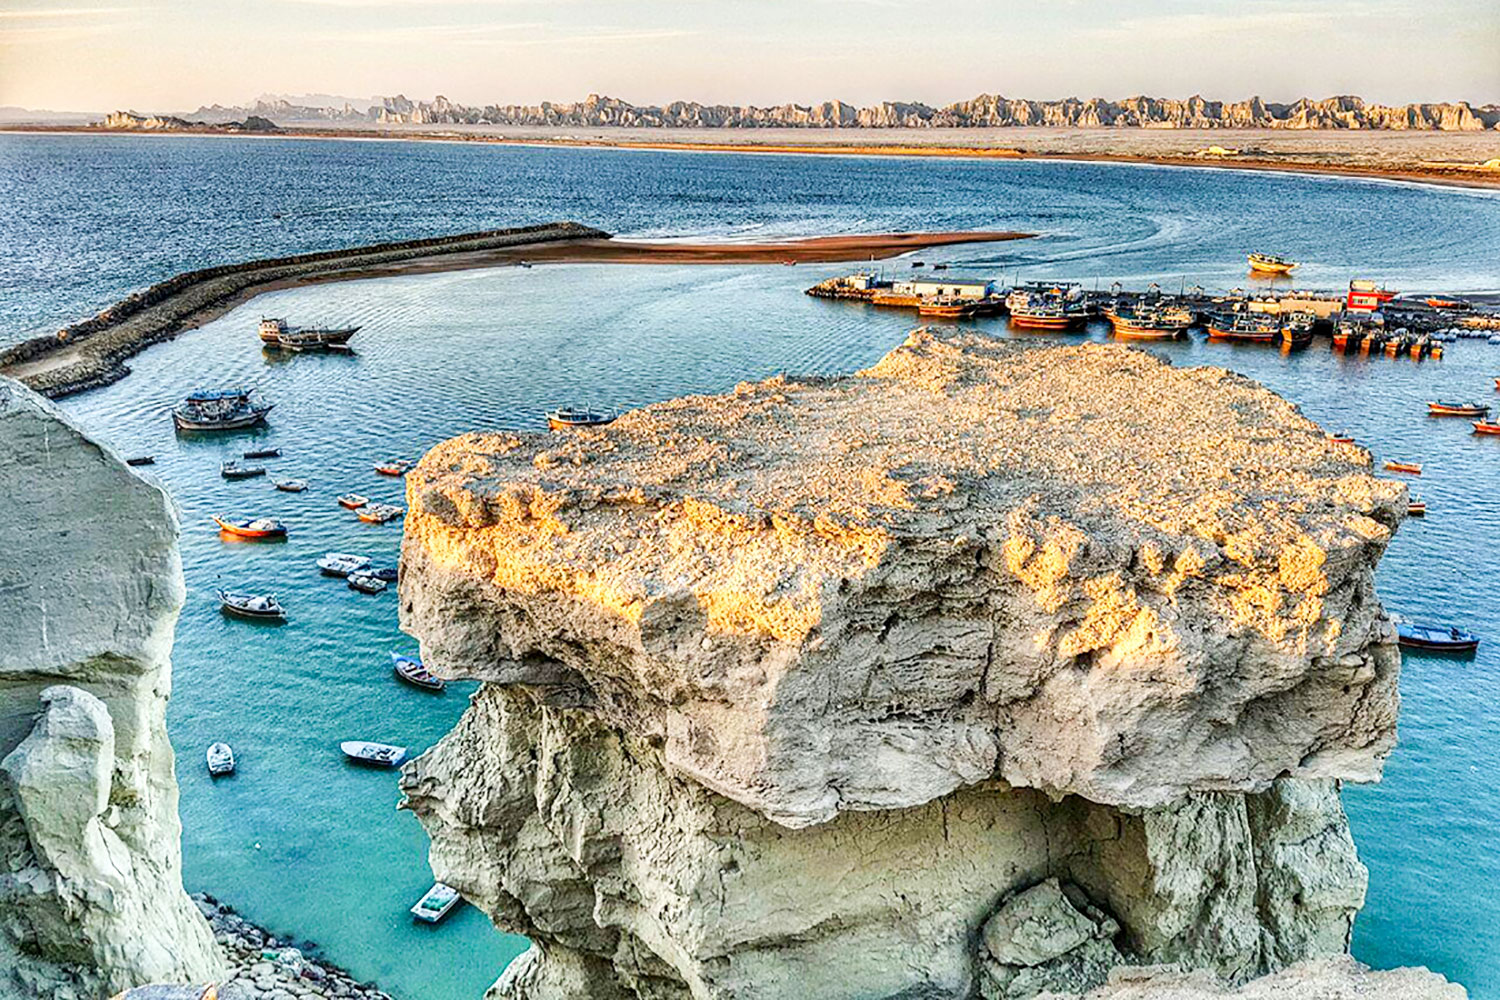 شاطئ بريس.. أجمل وأندر الشواطئ الصخرية في إيران+صور